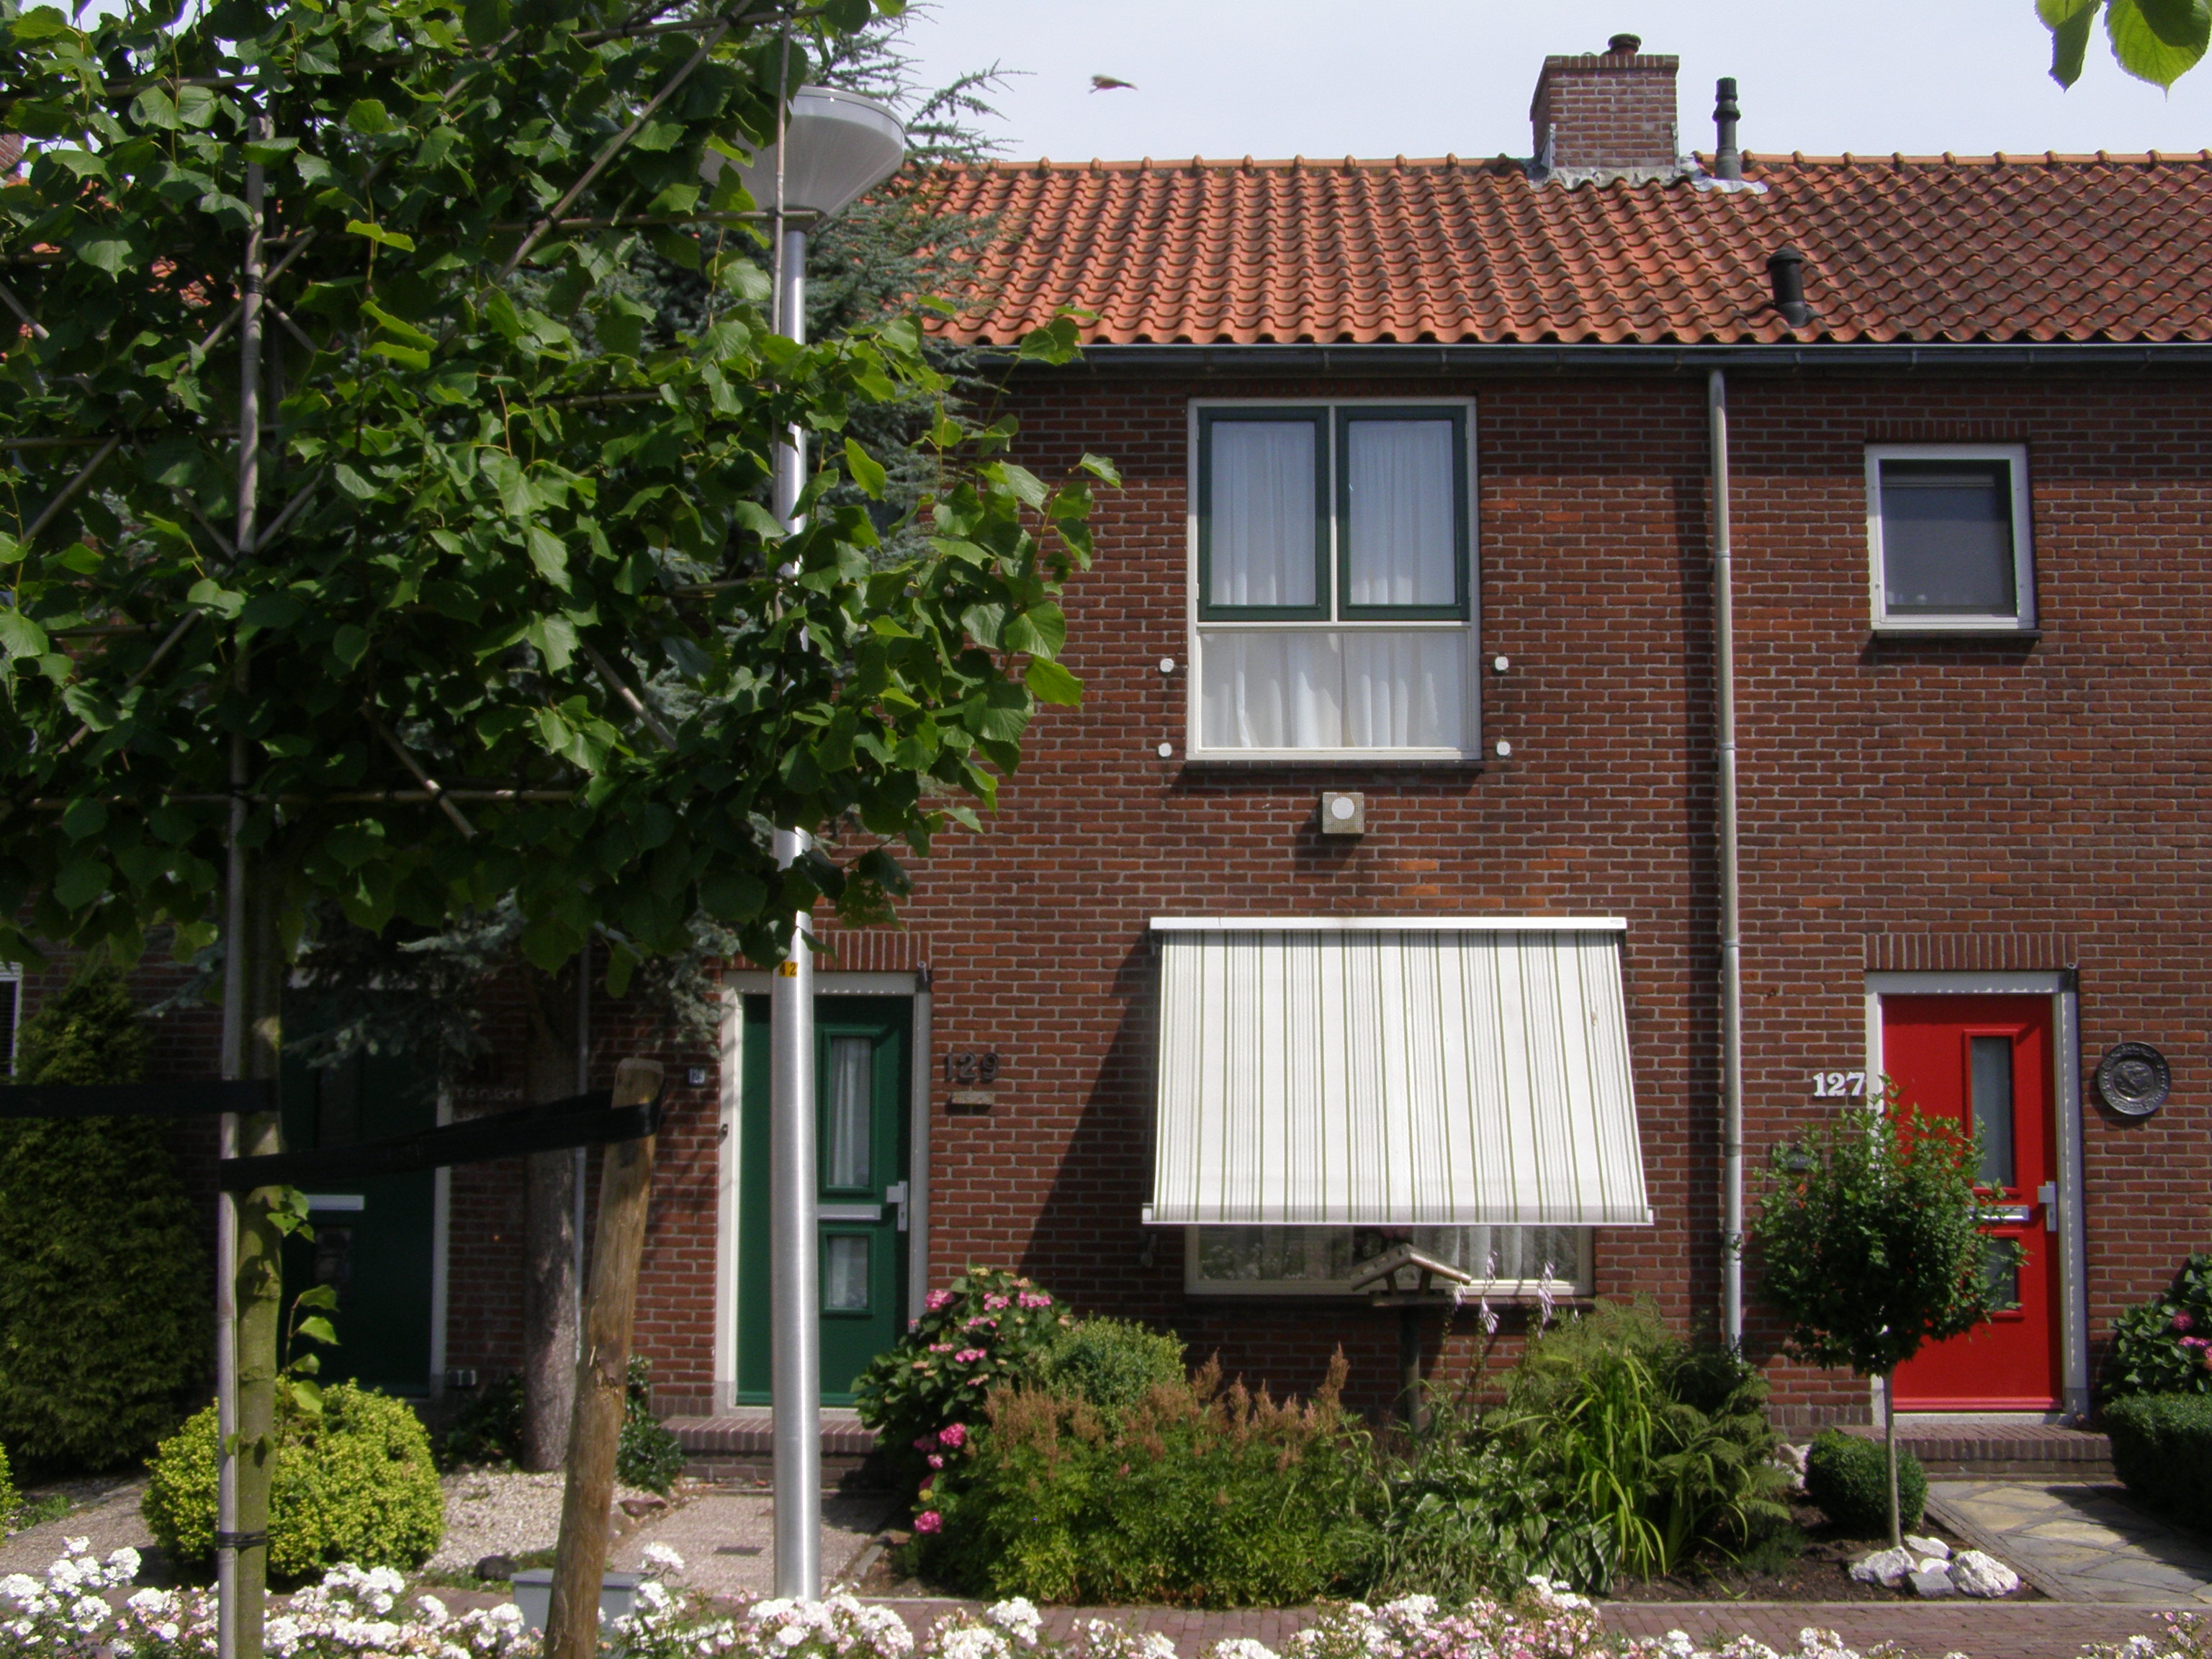 Goudse Rijweg 129, 2771 AS Boskoop, Nederland